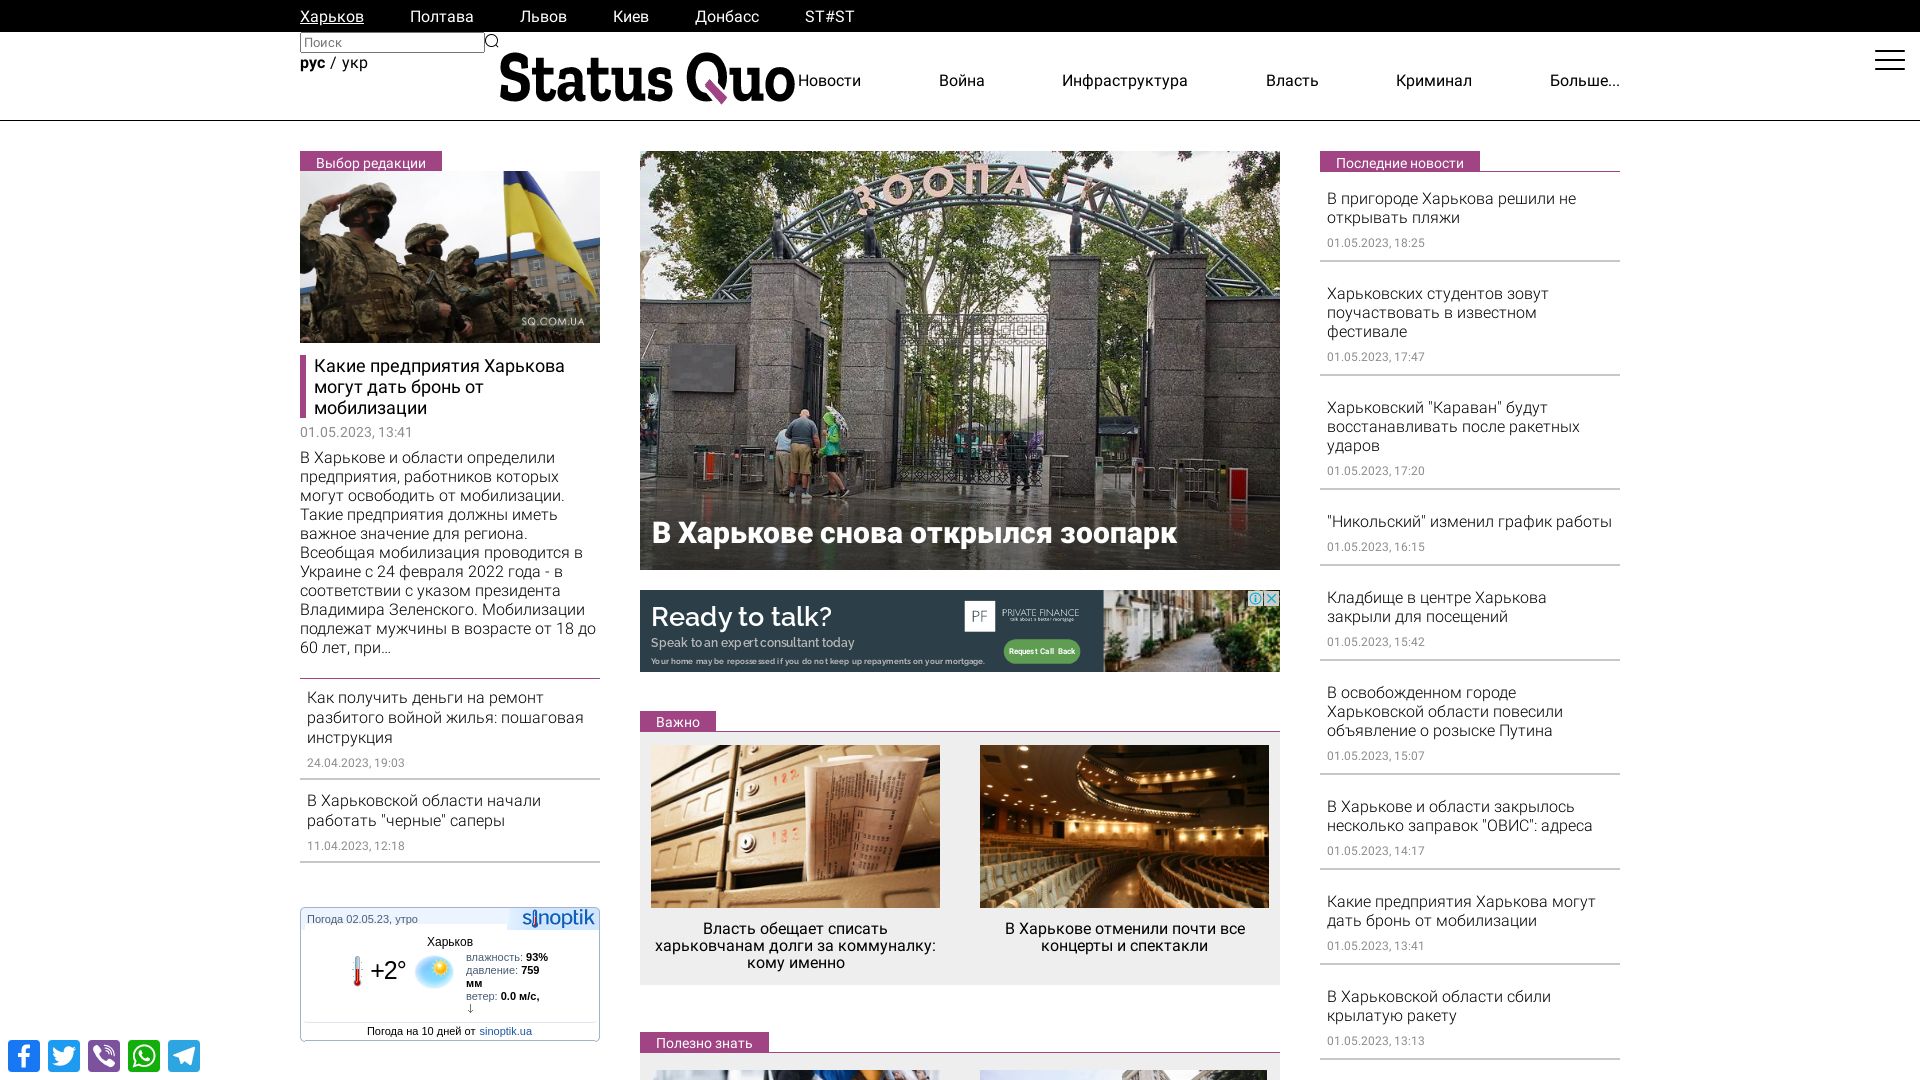 Status do site www.sq.com.ua está   ONLINE